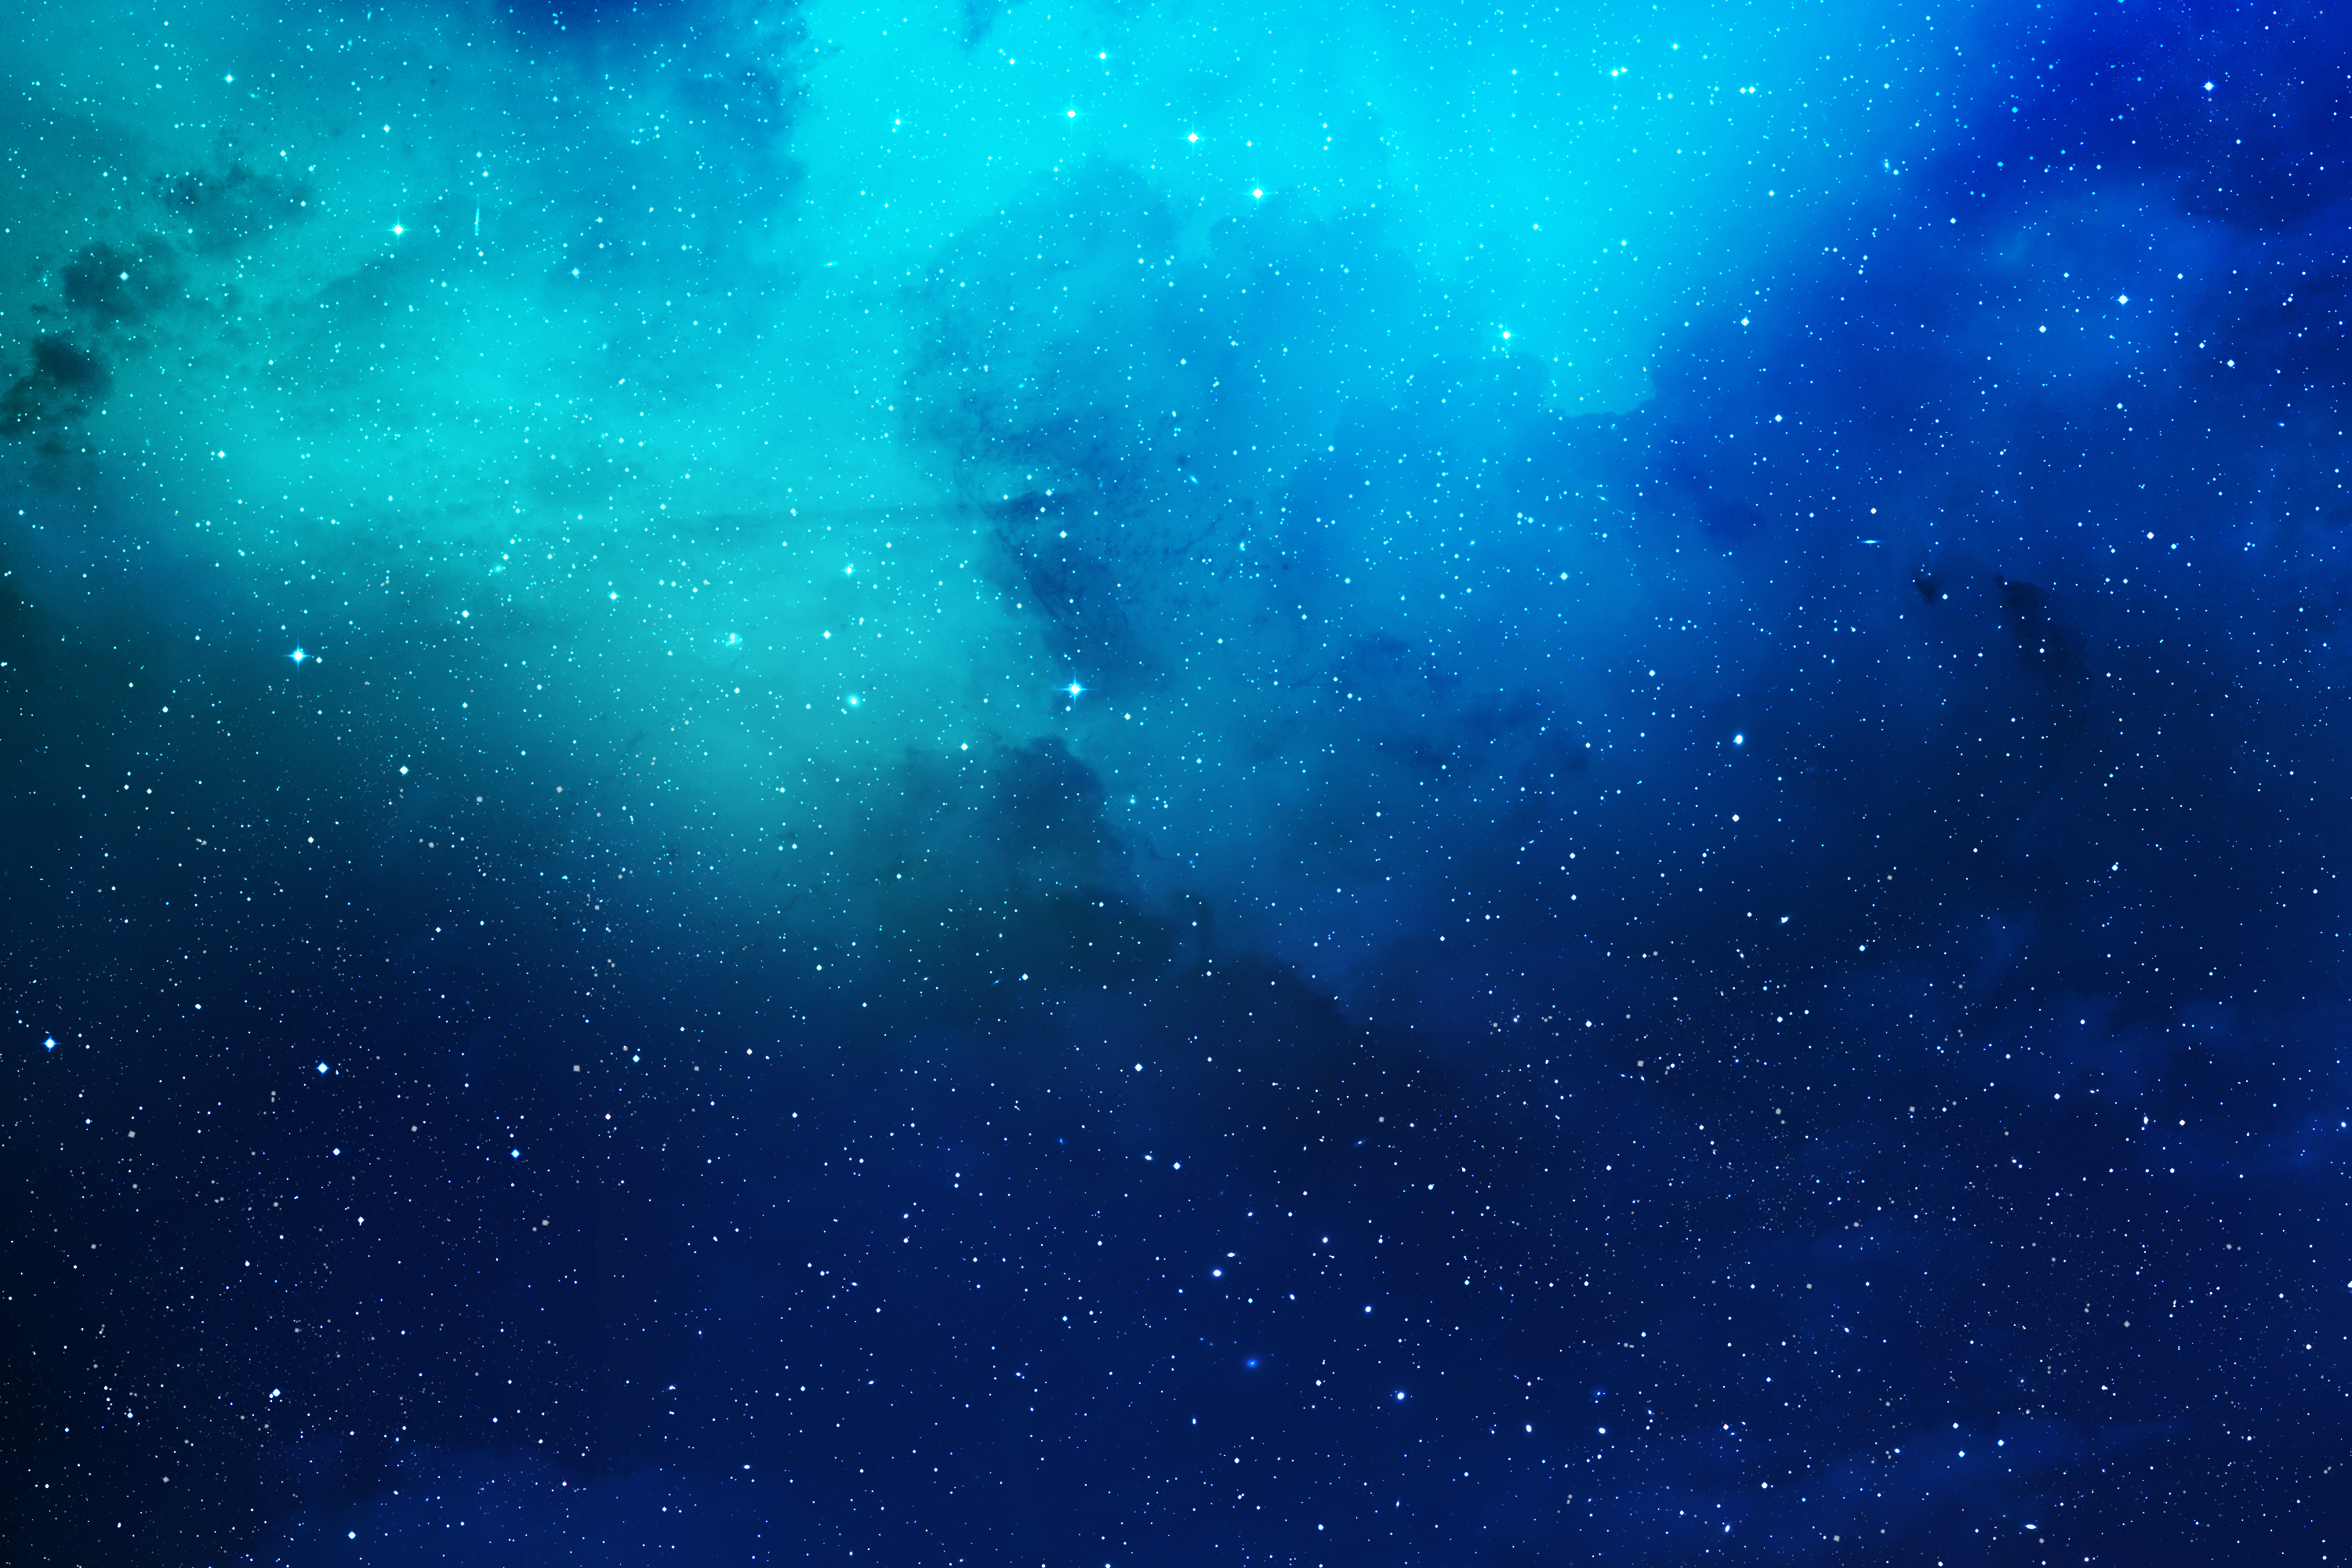 Với sắc xanh u ám của một vùng đất xa xôi, đó là màu sắc thú vị của không gian sao chổi, thu hút con mắt và tâm trí của bạn đến với vô vàn địa điểm kỳ lạ trong thiên hà. Hãy đắm chìm vào sự kỳ diệu của vũ trụ với hình ảnh Nebula Blue này.